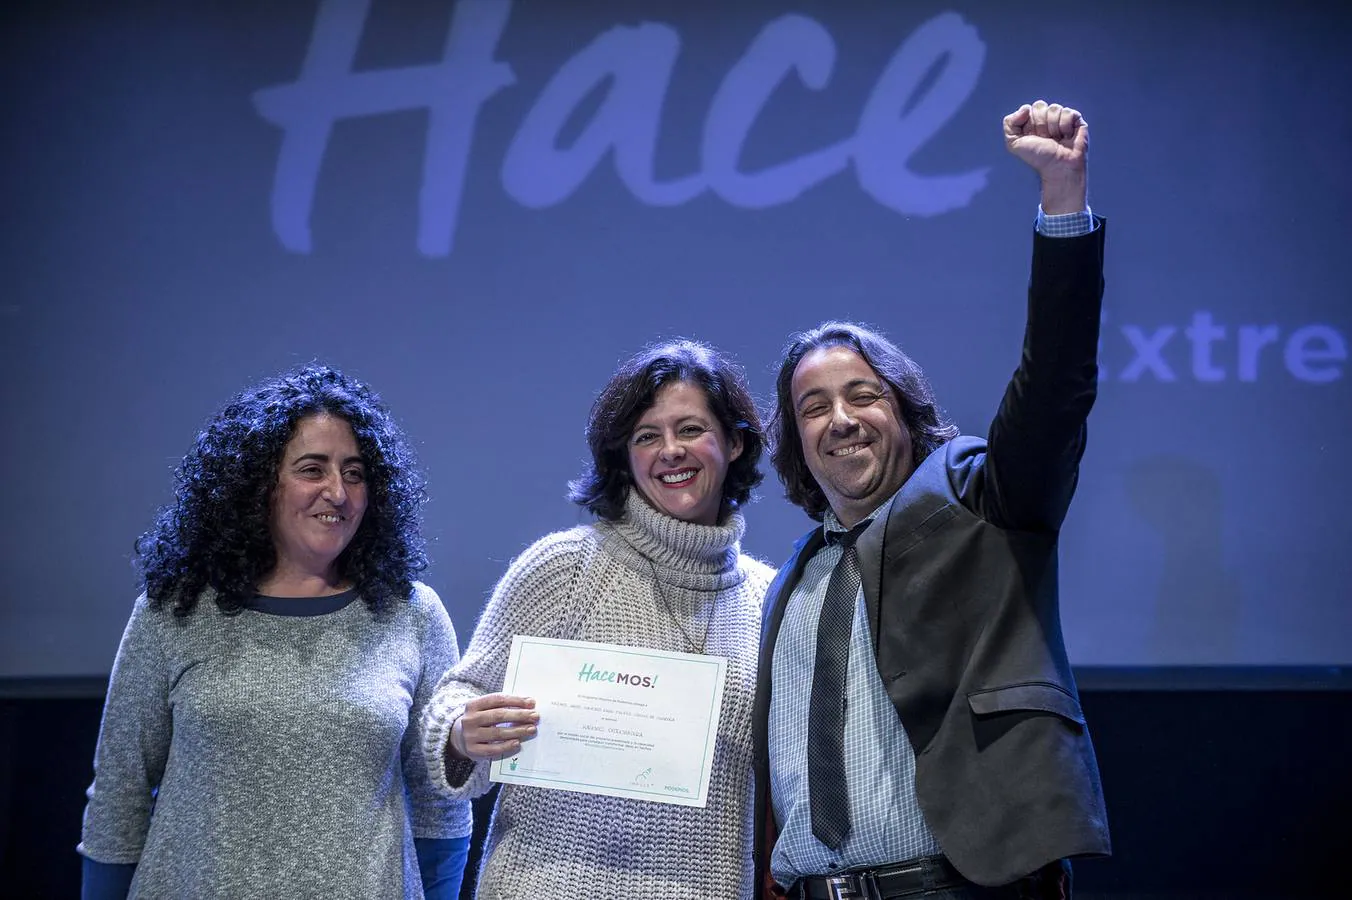 Eva García muestra el premio 'Hacemos!' (en el centro de la imagen), y José Luis Morcillo, eufórico, lev